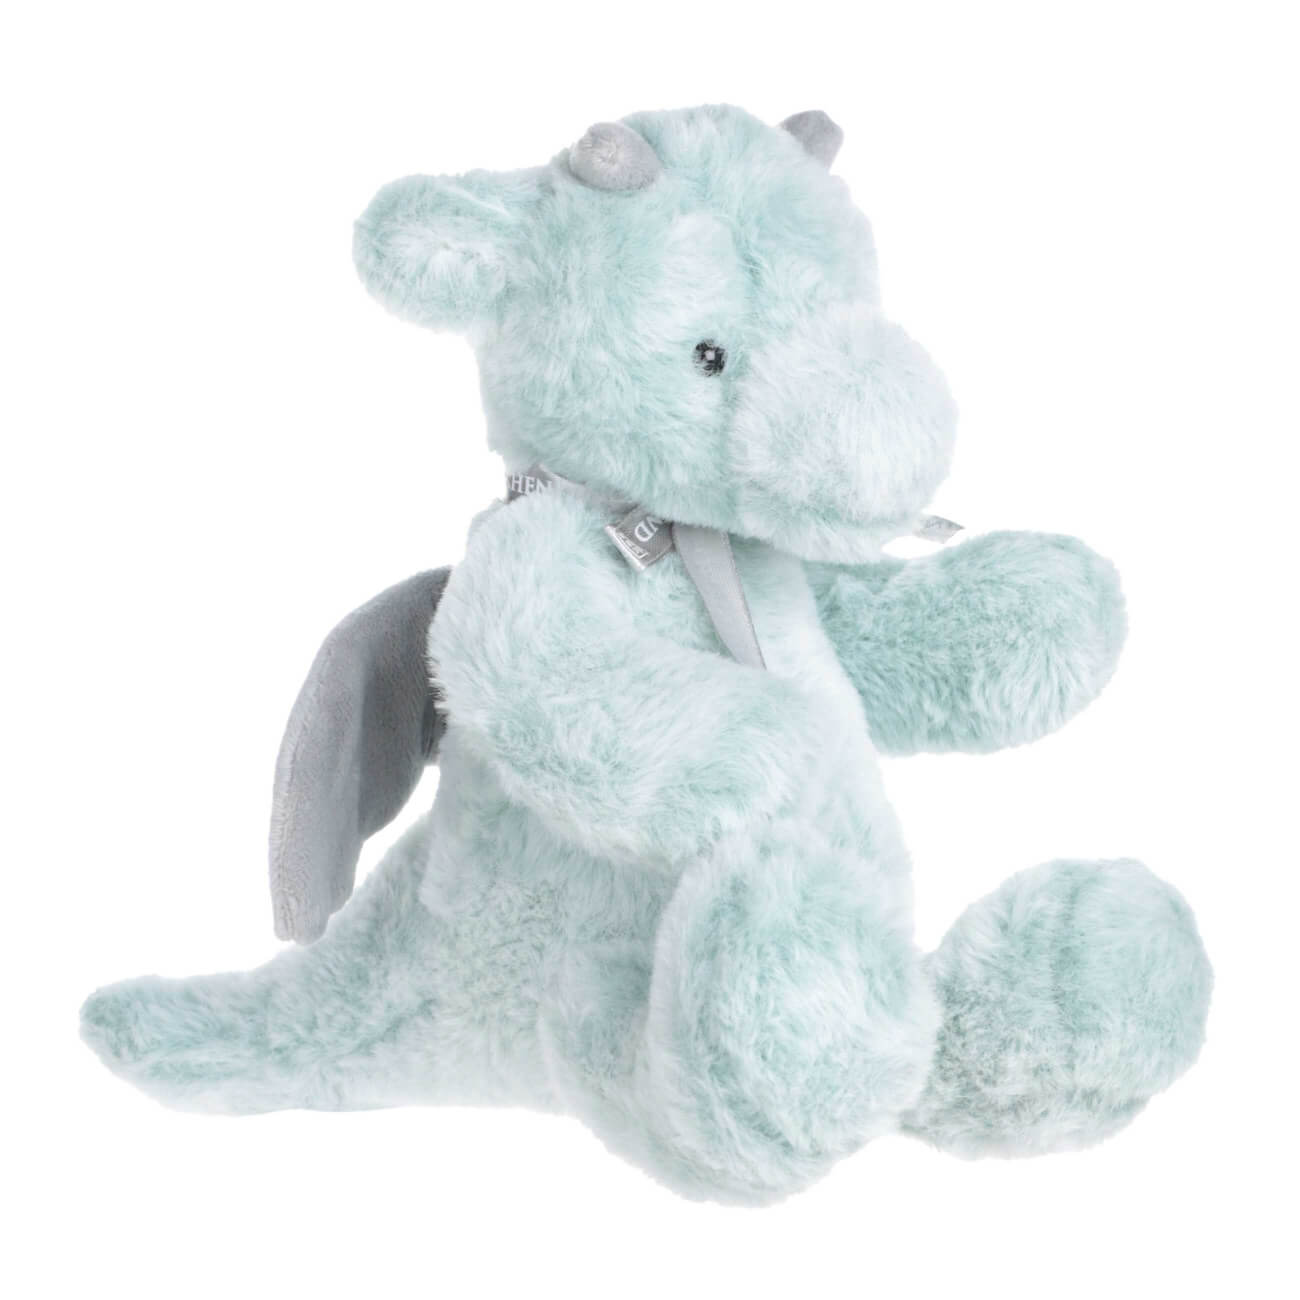 Игрушка, 32 см, мягкая, с подвижными лапами, полиэстер, серо-голубая, Дракон, Dragon toy развивающая игрушка с вишнёвыми косточками дракон андрюша